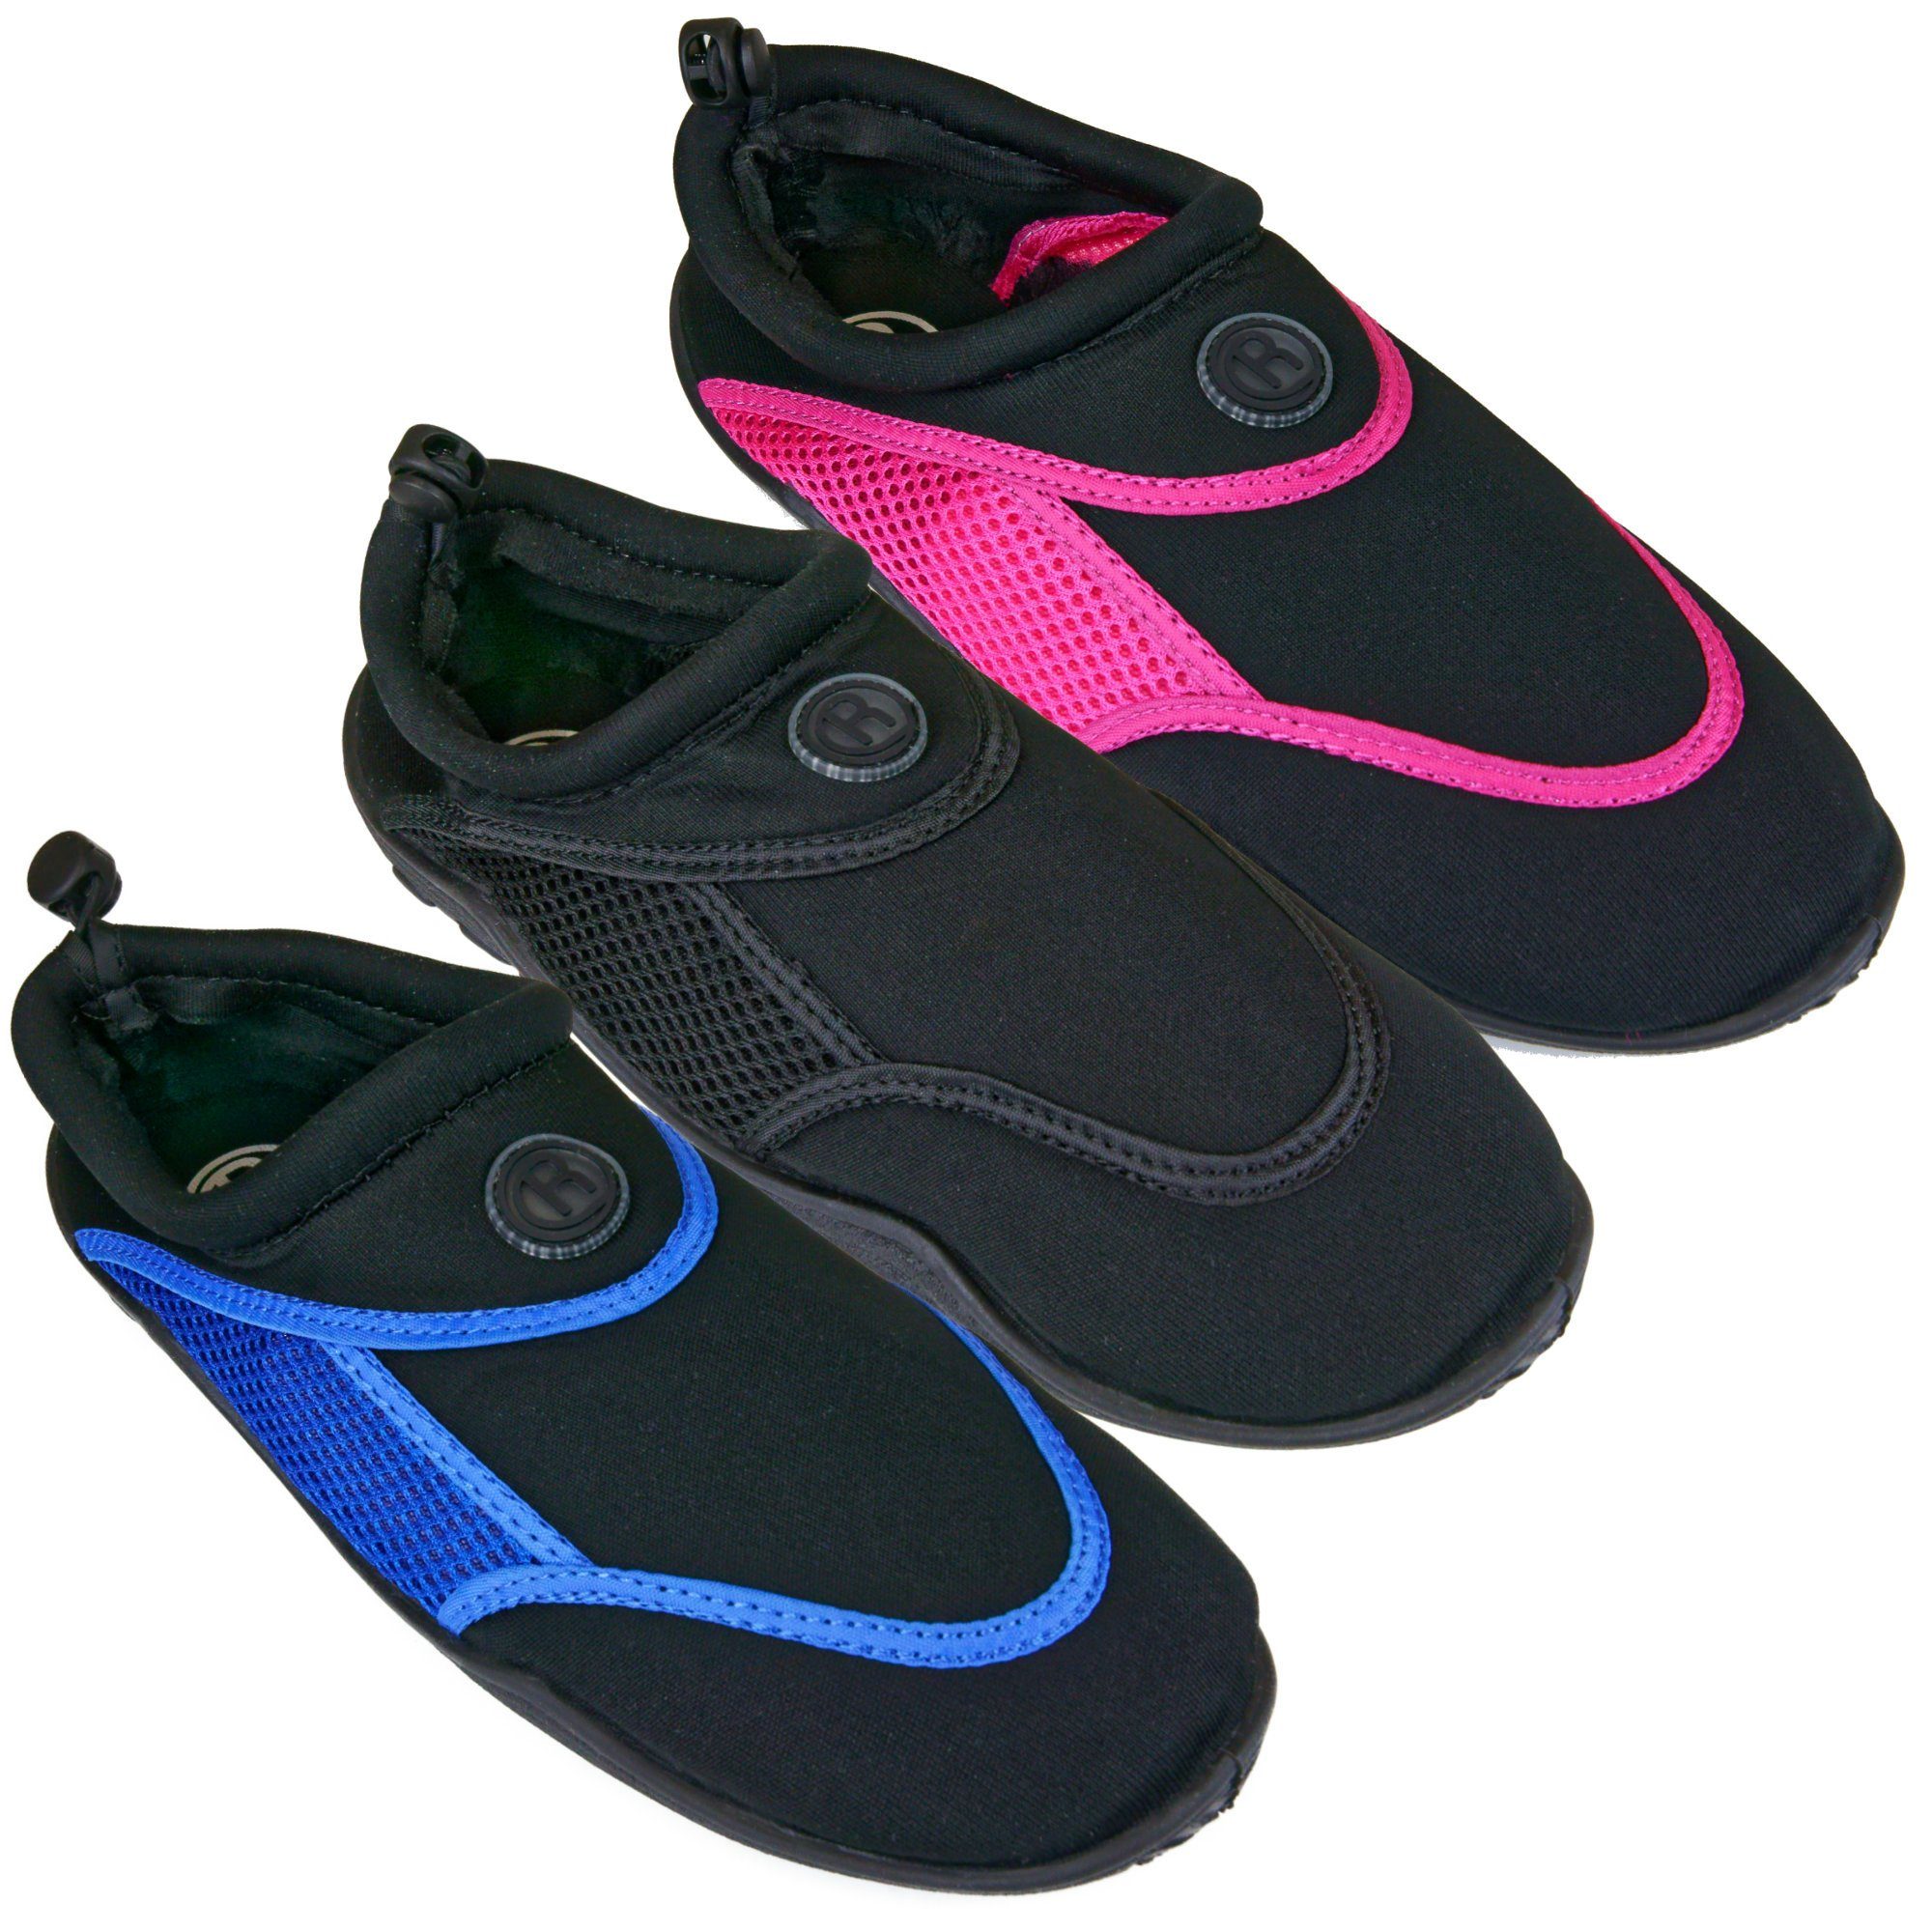 Aqua-Schuhe Surf-Schuhe Badeschuh Rutscherlebnis / Pink/Black